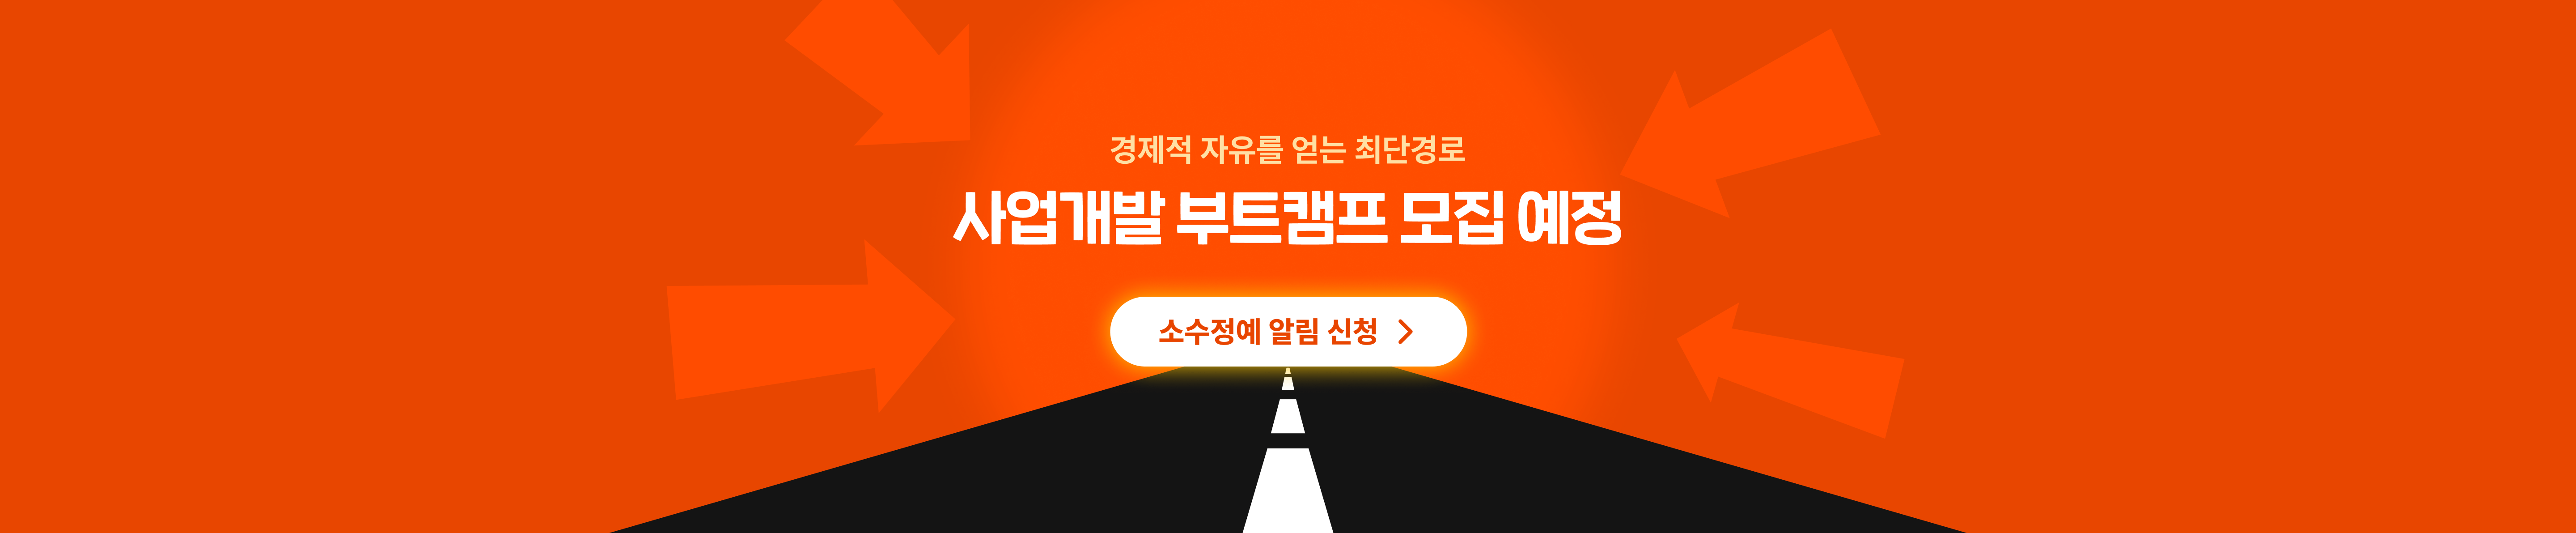 사업개발 부트캠프 모집예정